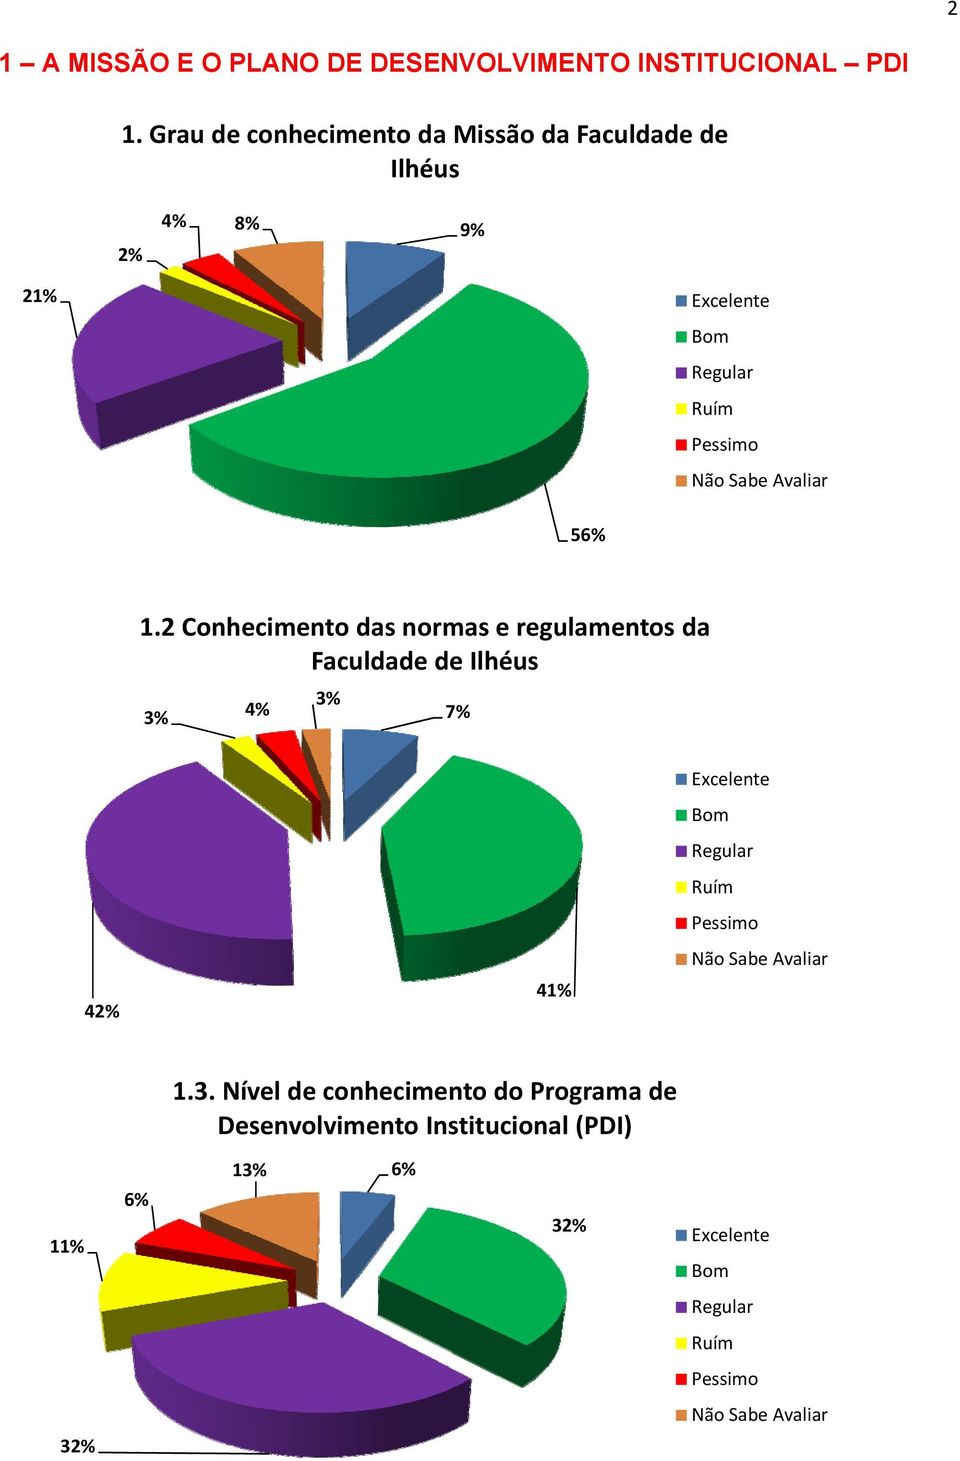 2 Conhecimento das normas e regulamentos da Faculdade de Ilhéus 3% 4% 3% 7%